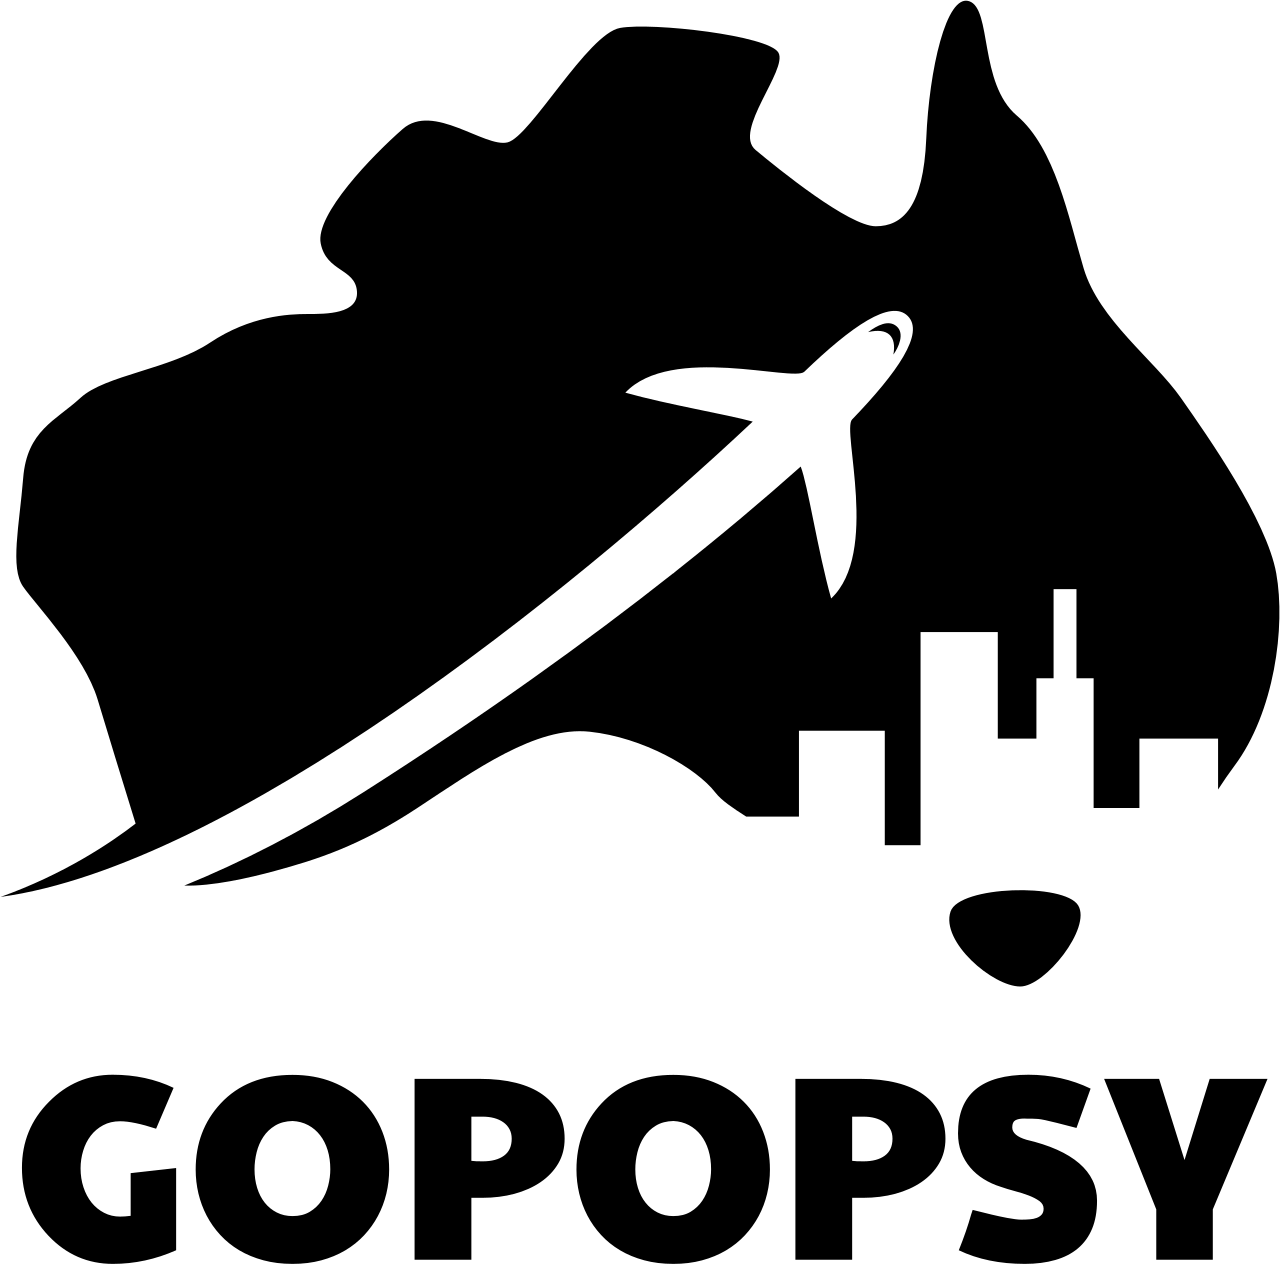 GOPOPSY's logo